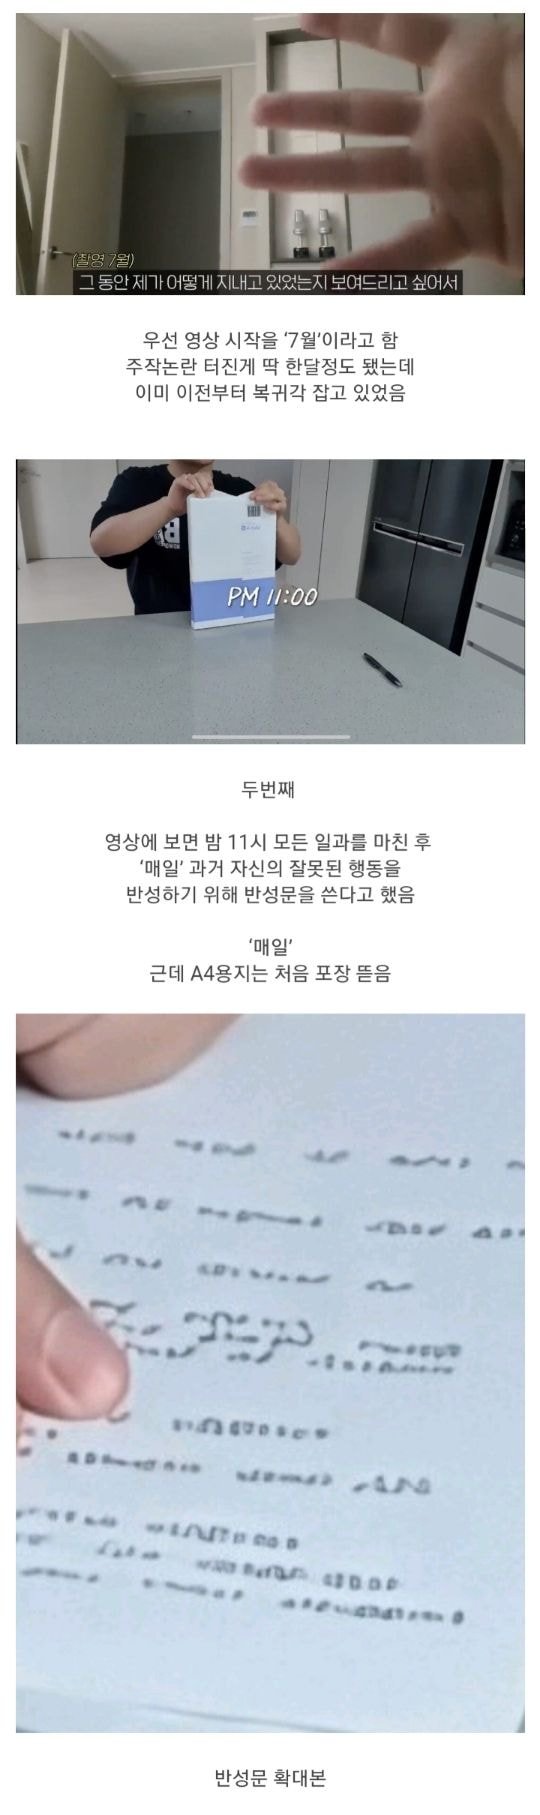 유튜버 송대익 반성문 복귀영상 ‘반성문 주작 논란’